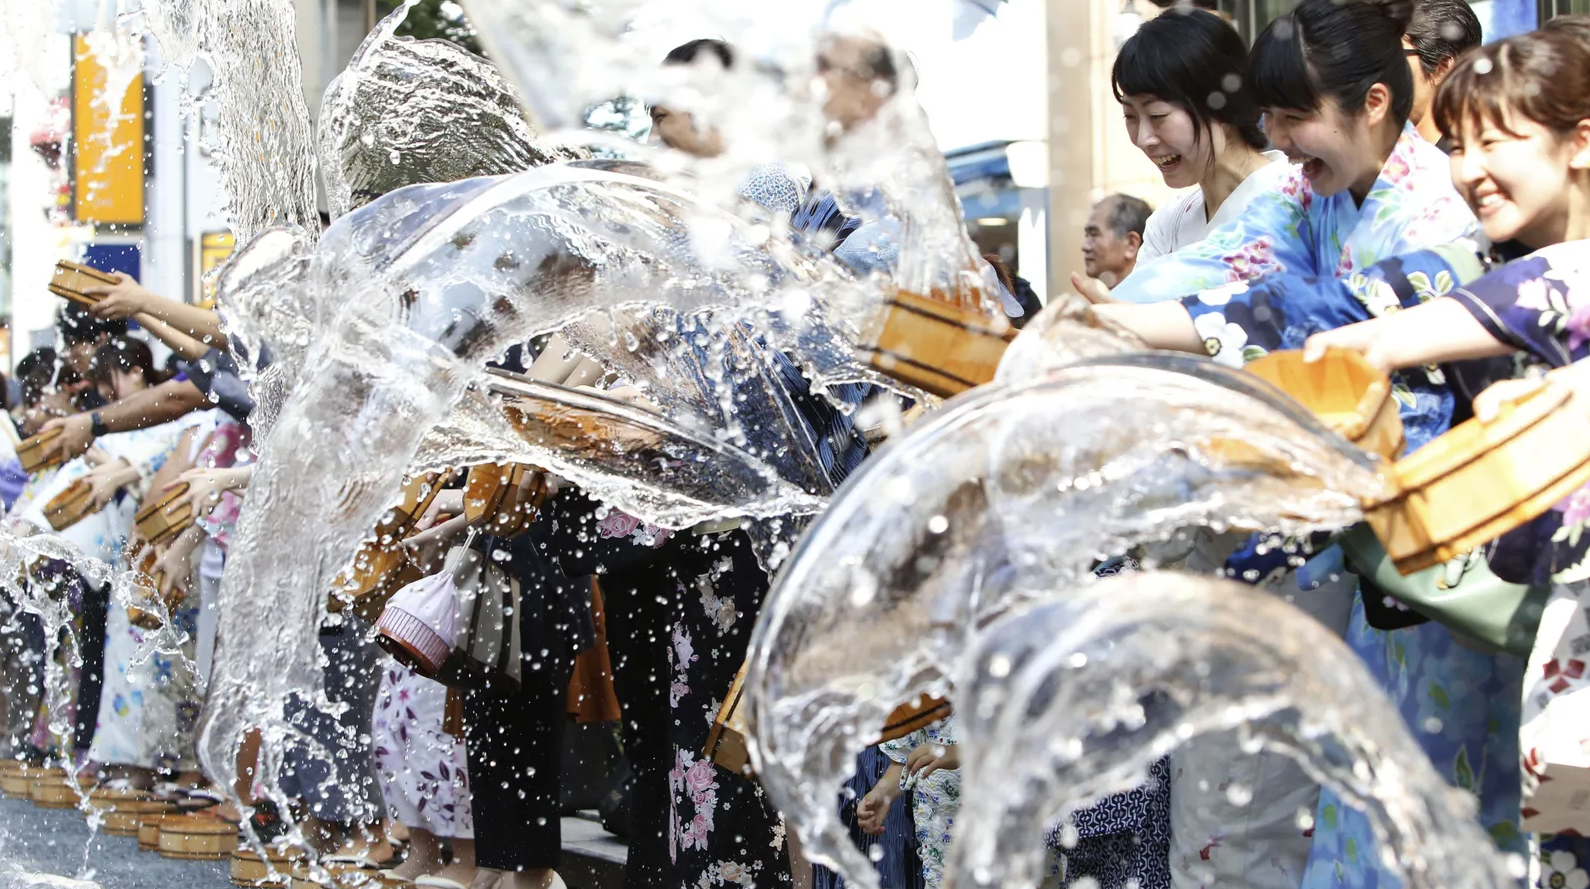 Biện pháp tránh nóng độc lạ của người Nhật: Từ ăn cay, té nước cho tới mặc đồ rộng thùng thình - Ảnh 2.